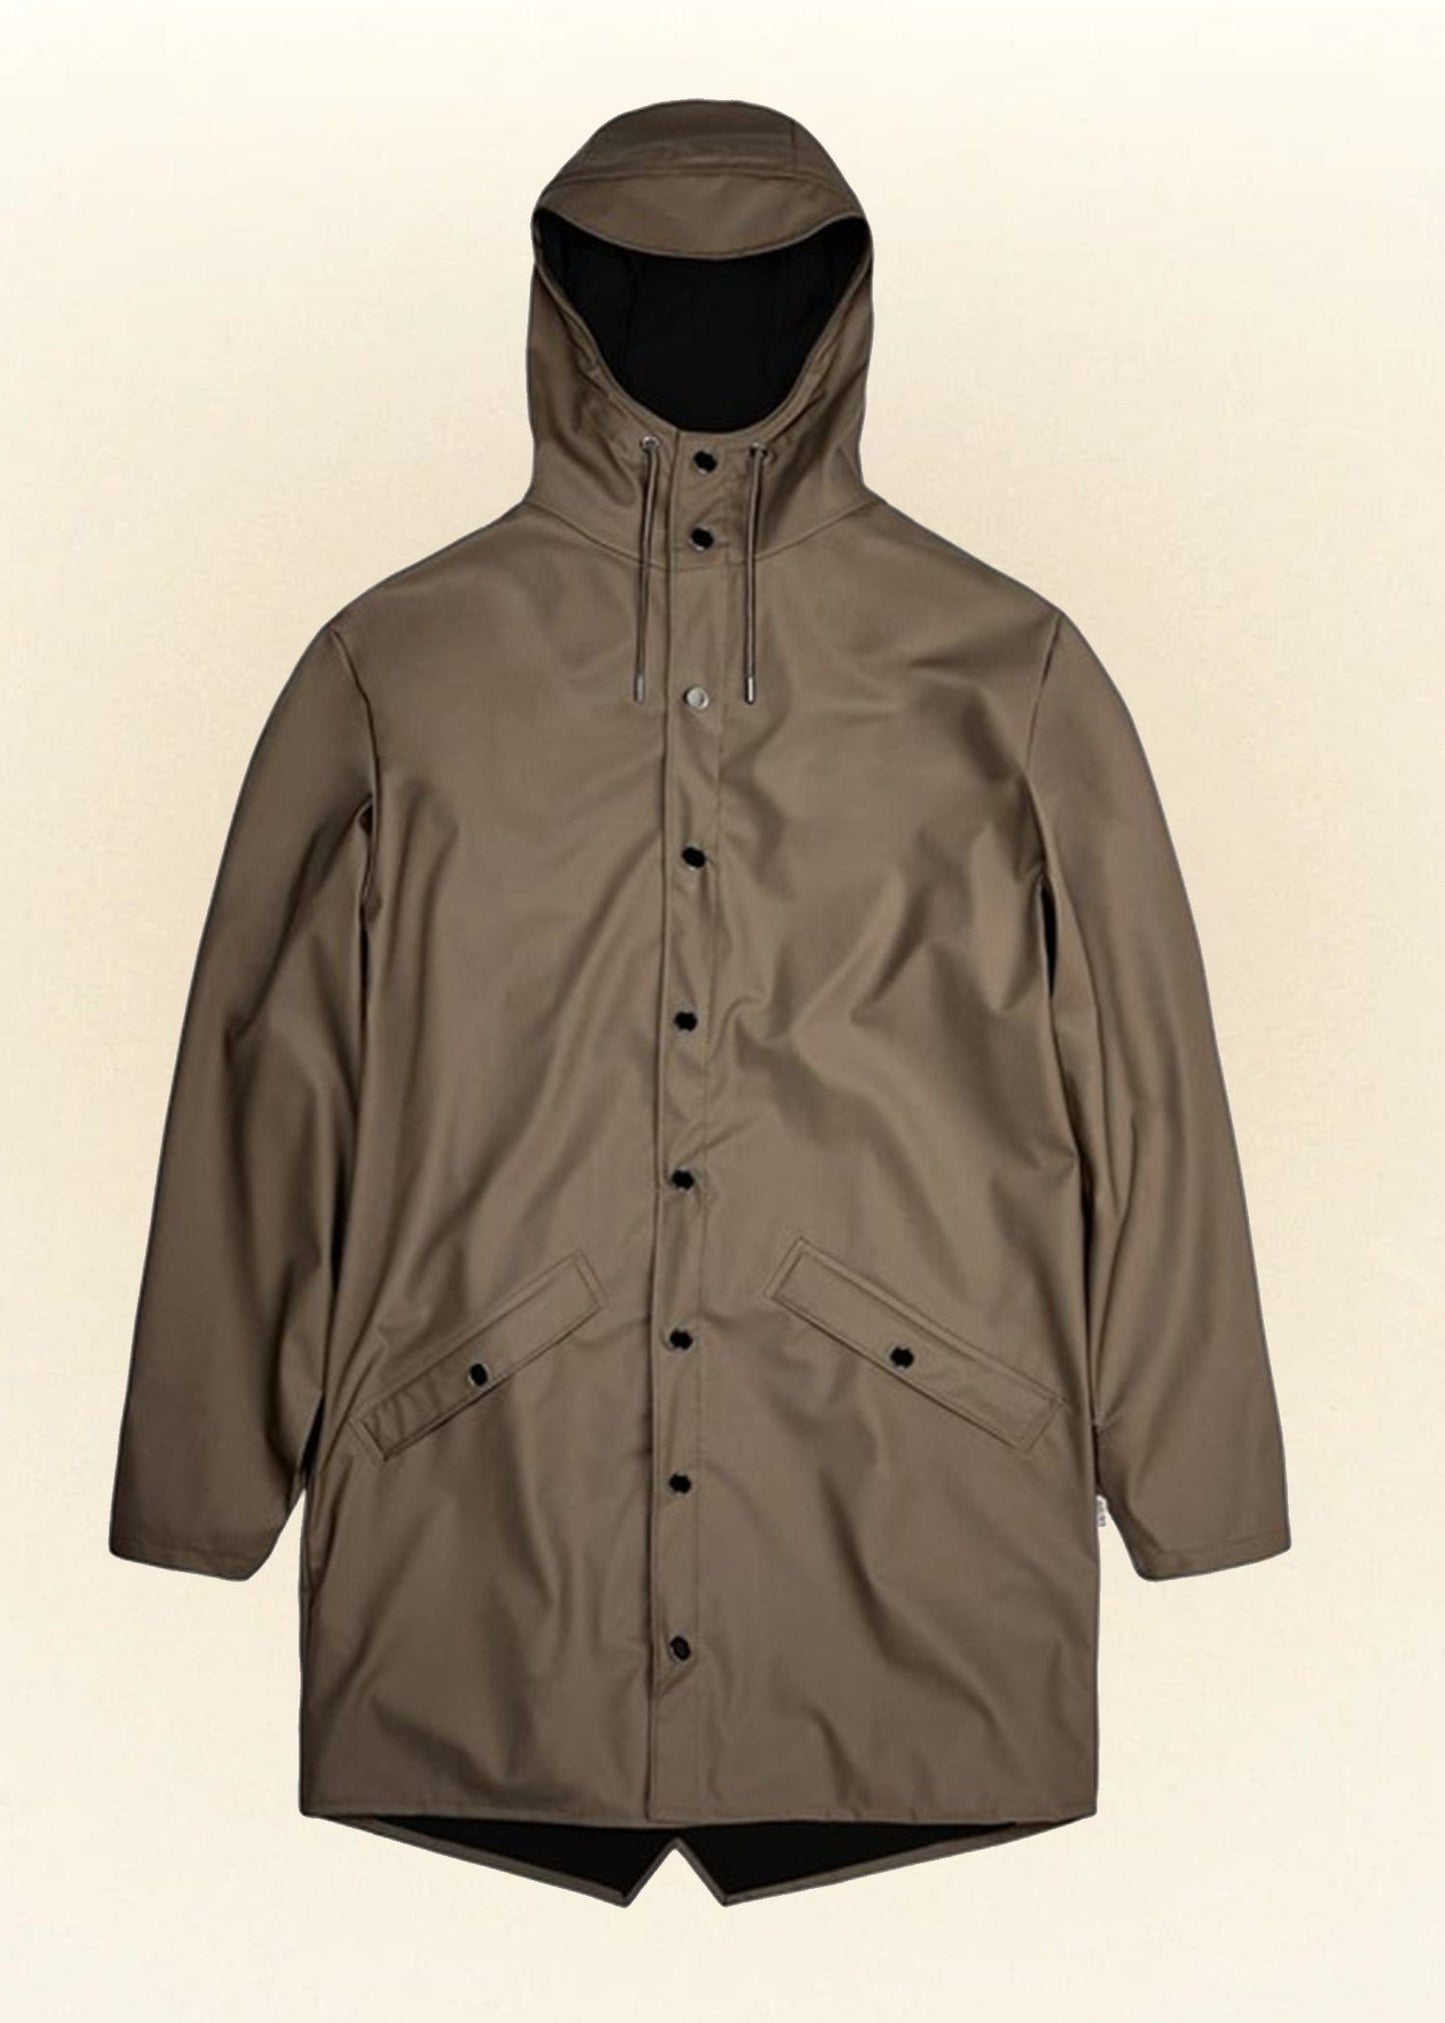 Rains Veste/Blouson Wood / XS Imperméable Rains - Long Jacket